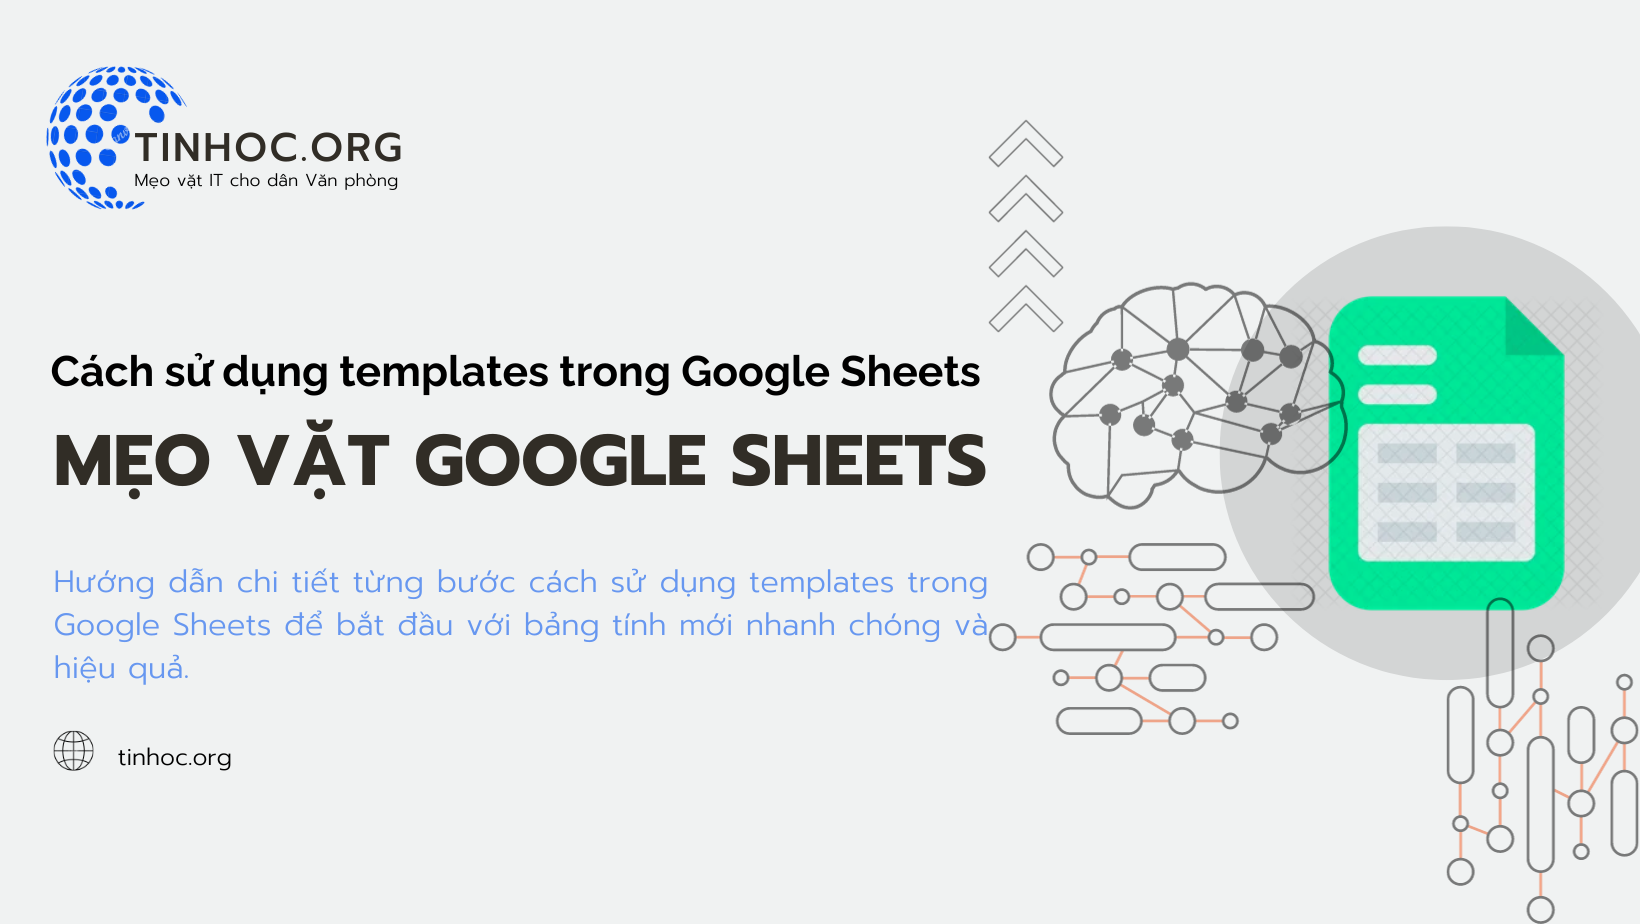 Hướng dẫn chi tiết từng bước cách sử dụng templates trong Google Sheets để bắt đầu với bảng tính mới nhanh chóng và hiệu quả.